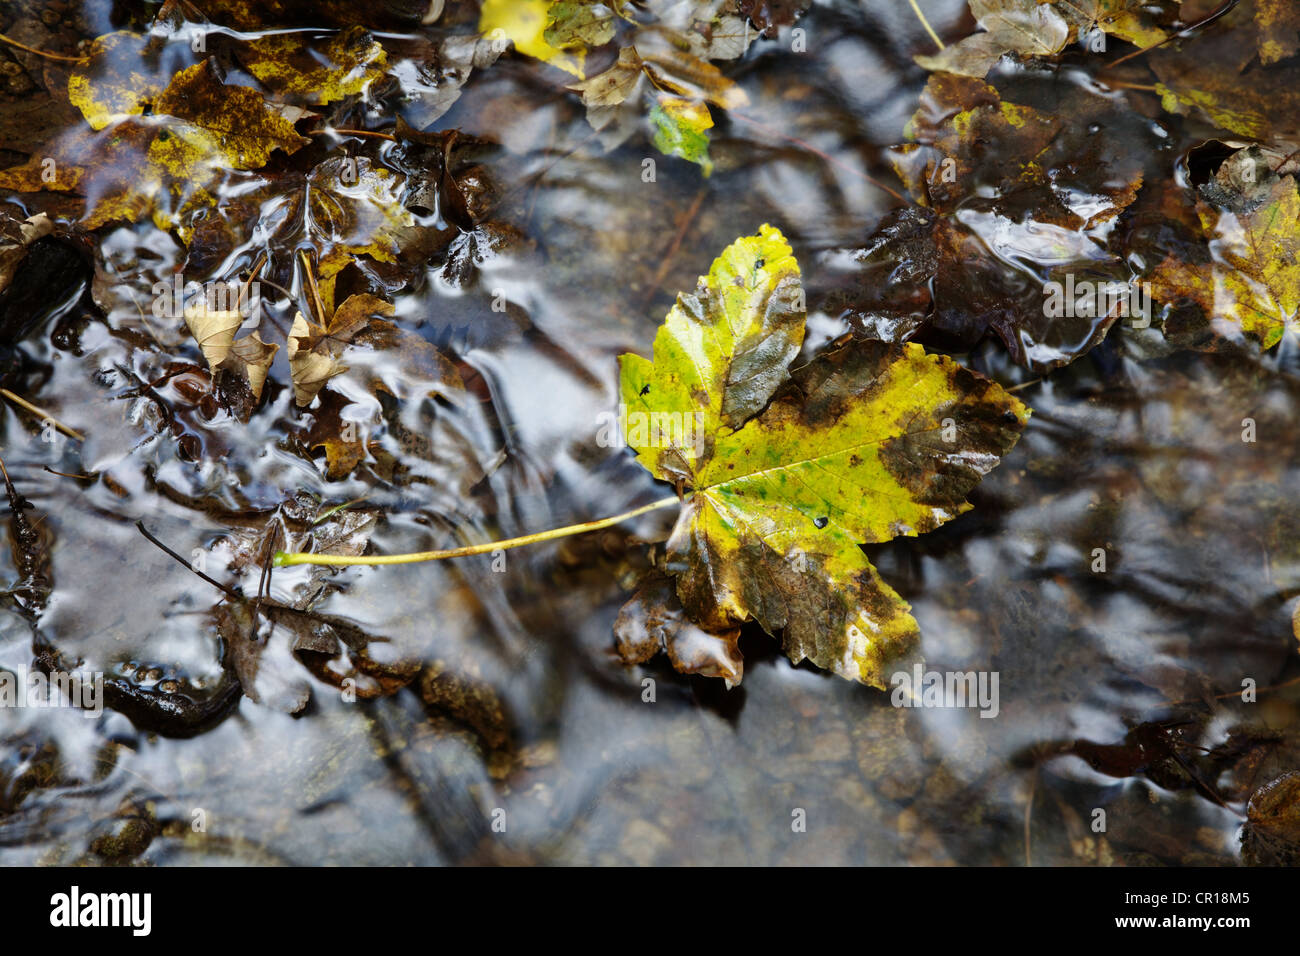 Feuilles d'érable (Aceraceae) reposant sur des pierres dans un ruisseau de Wutachschlucht ravin dans la Forêt-Noire, Bade-Wurtemberg Banque D'Images